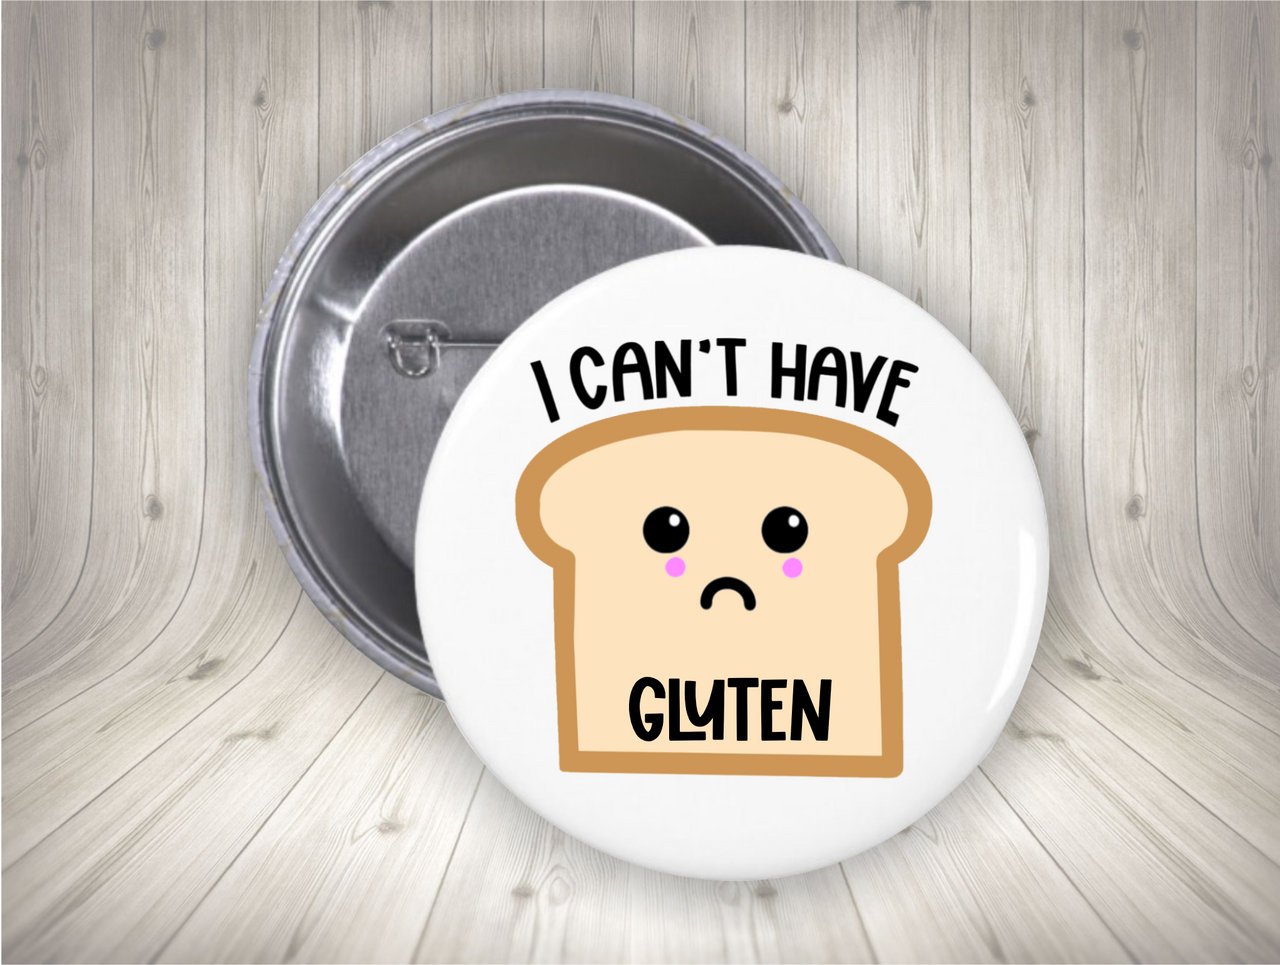 Gluten allergy alert button